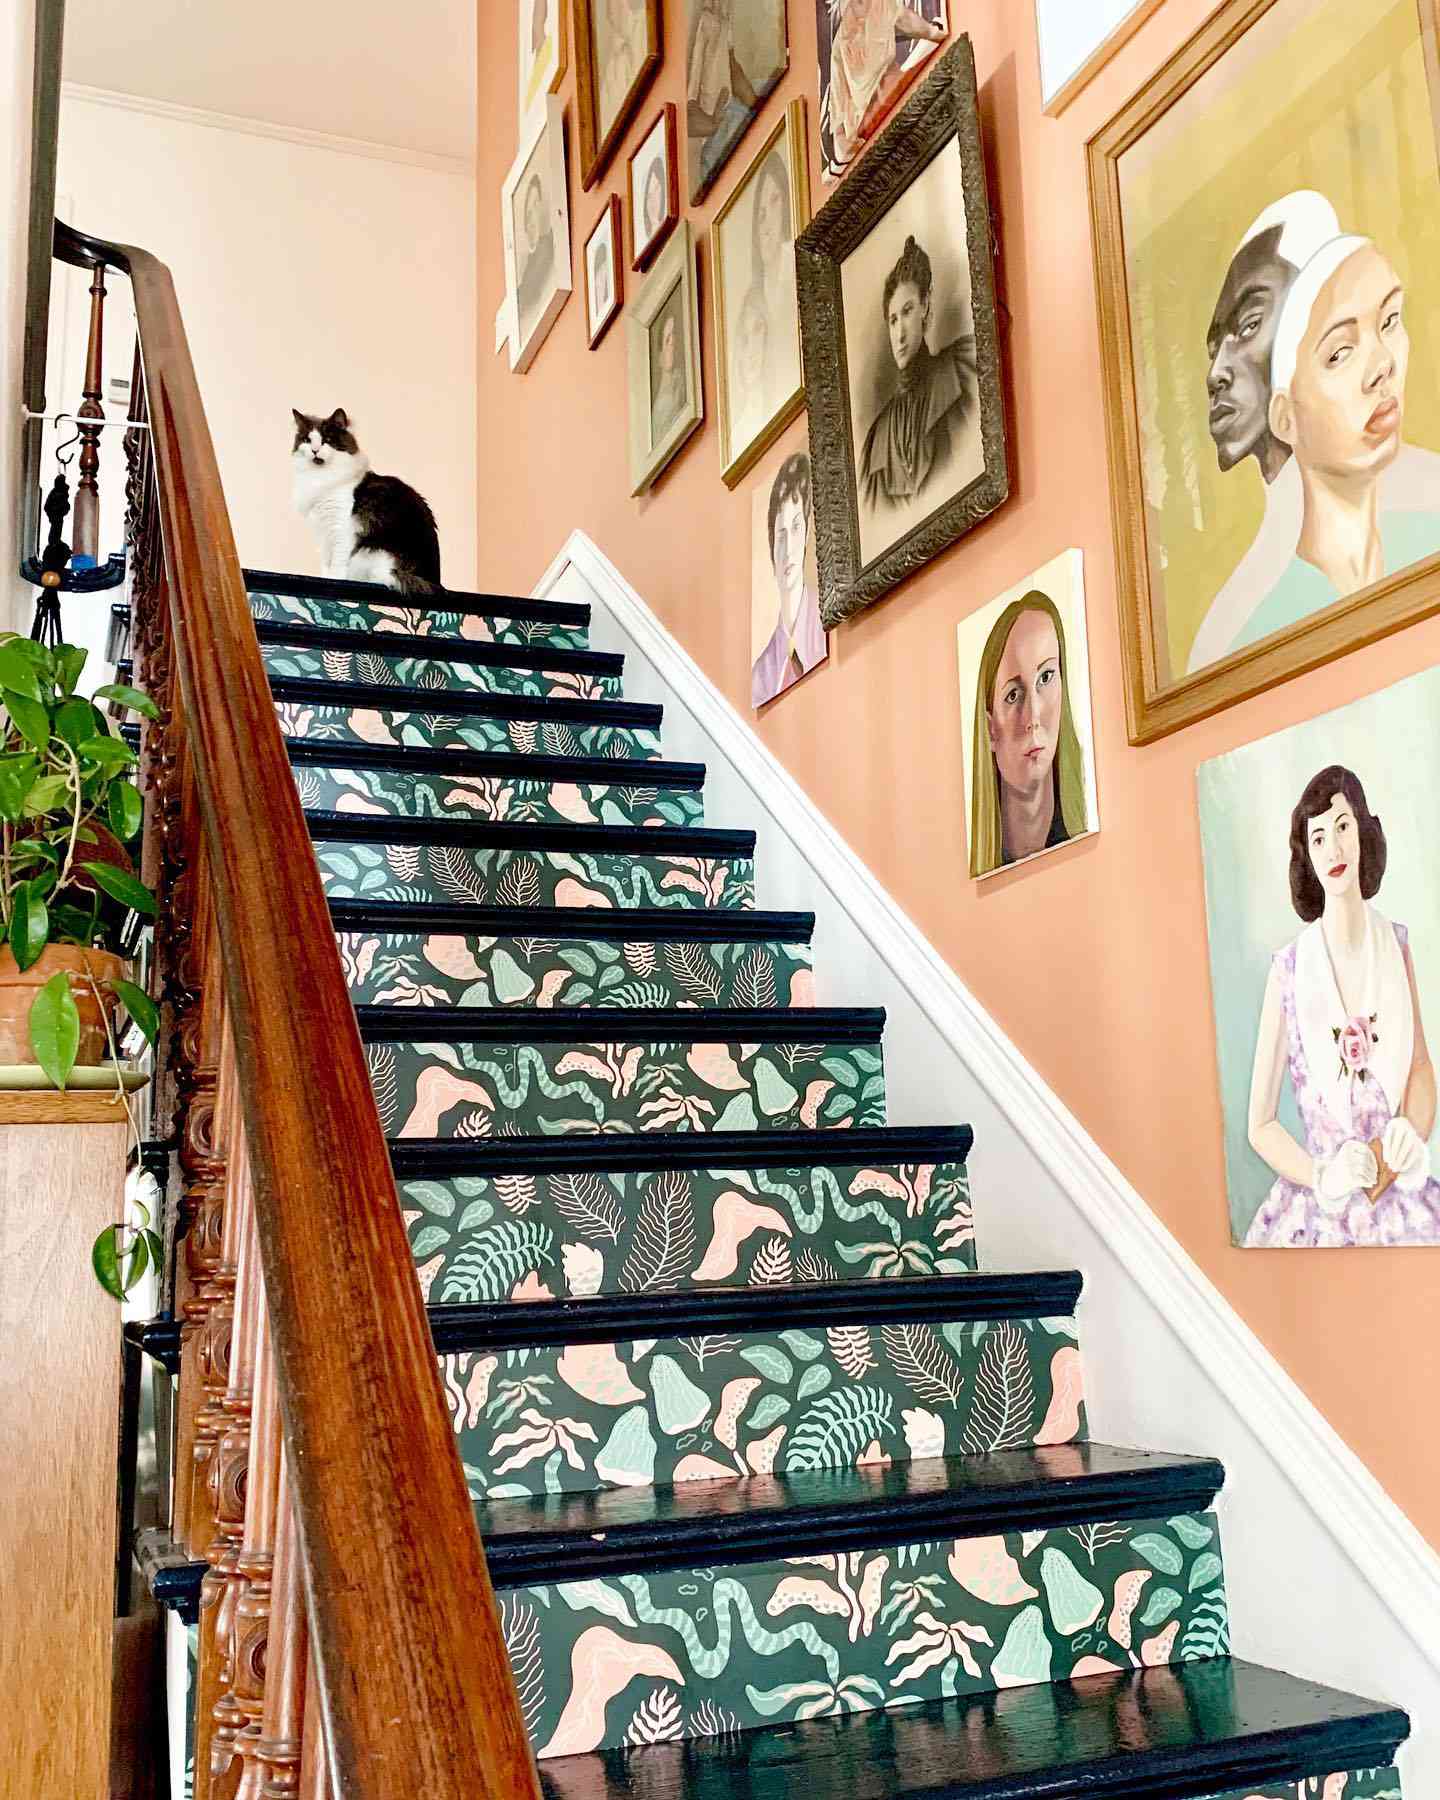 Sarah K Benning / Frida Clerhage wallpapered stairs